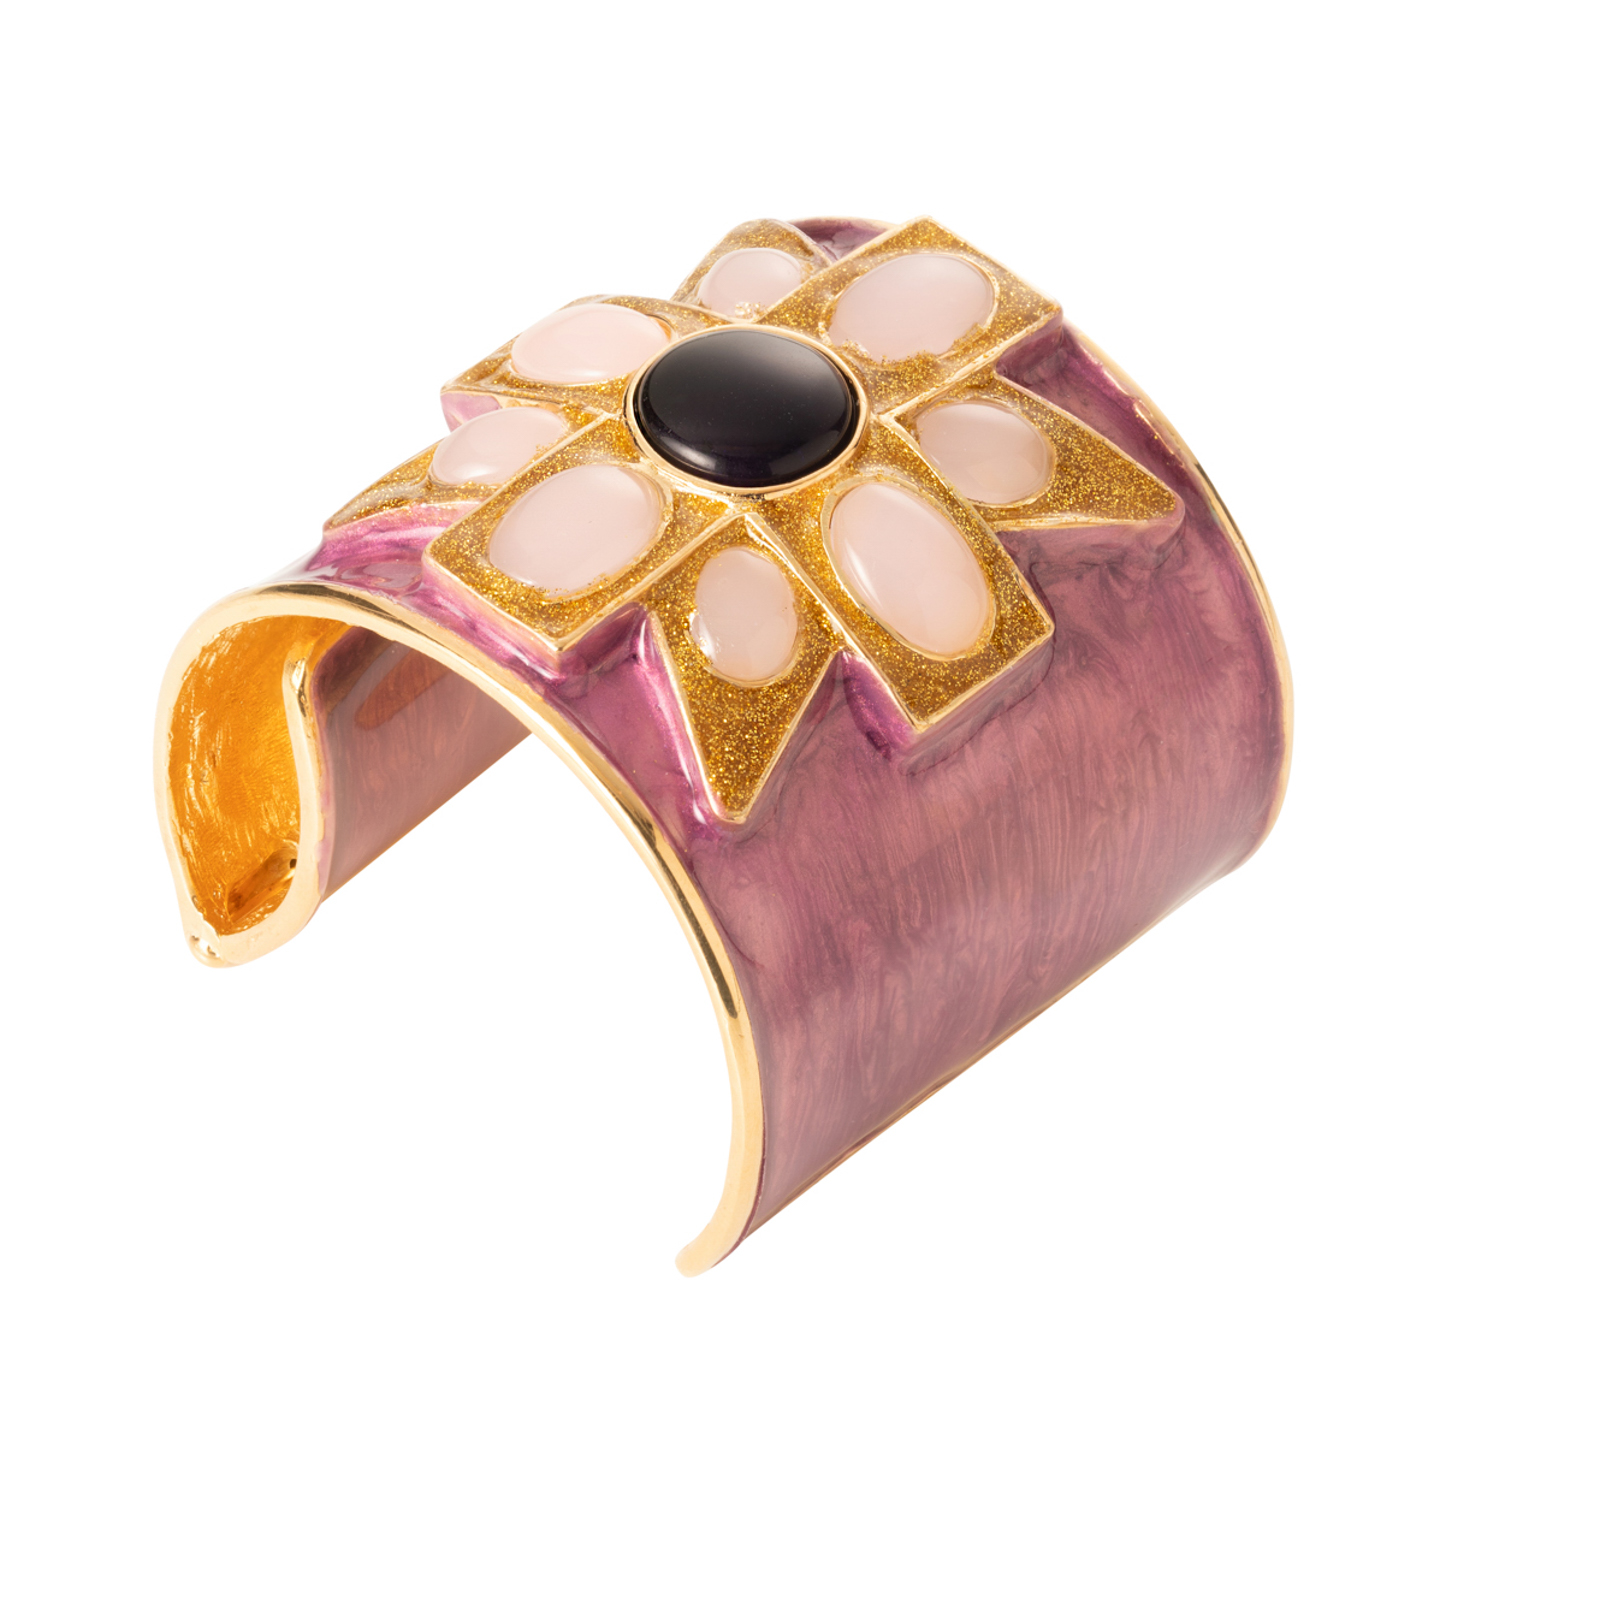 Bracciale manette con croce di malta rifinita con pietre cristallo color viola madreperla